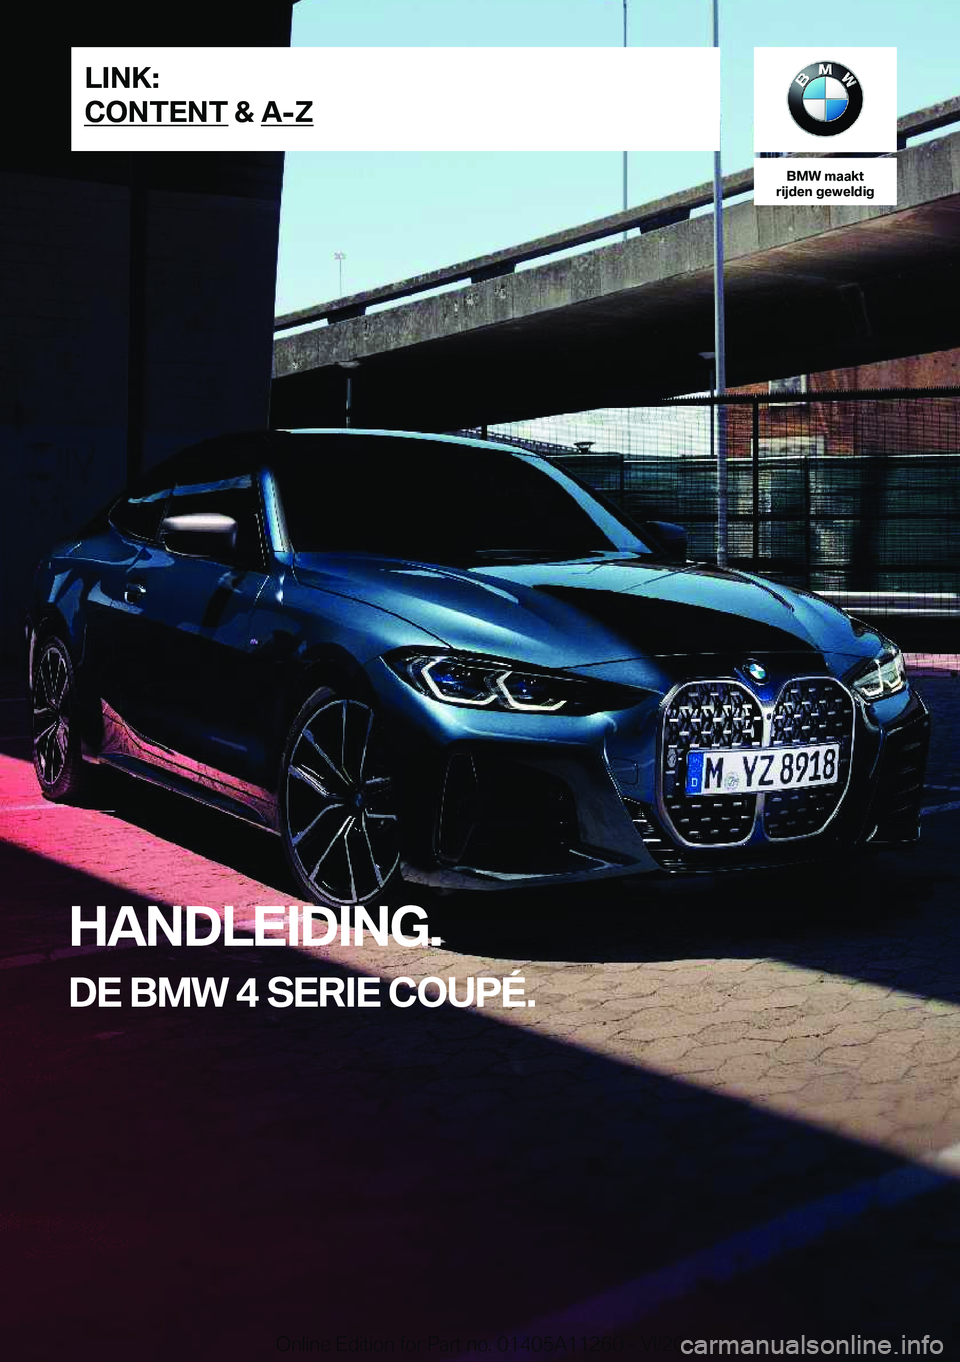 BMW 4 SERIES COUPE 2021  Instructieboekjes (in Dutch) �B�M�W��m�a�a�k�t
�r�i�j�d�e�n��g�e�w�e�l�d�i�g
�H�A�N�D�L�E�I�D�I�N�G�.
�D�E��B�M�W��4��S�E�R�I�E��C�O�U�P�